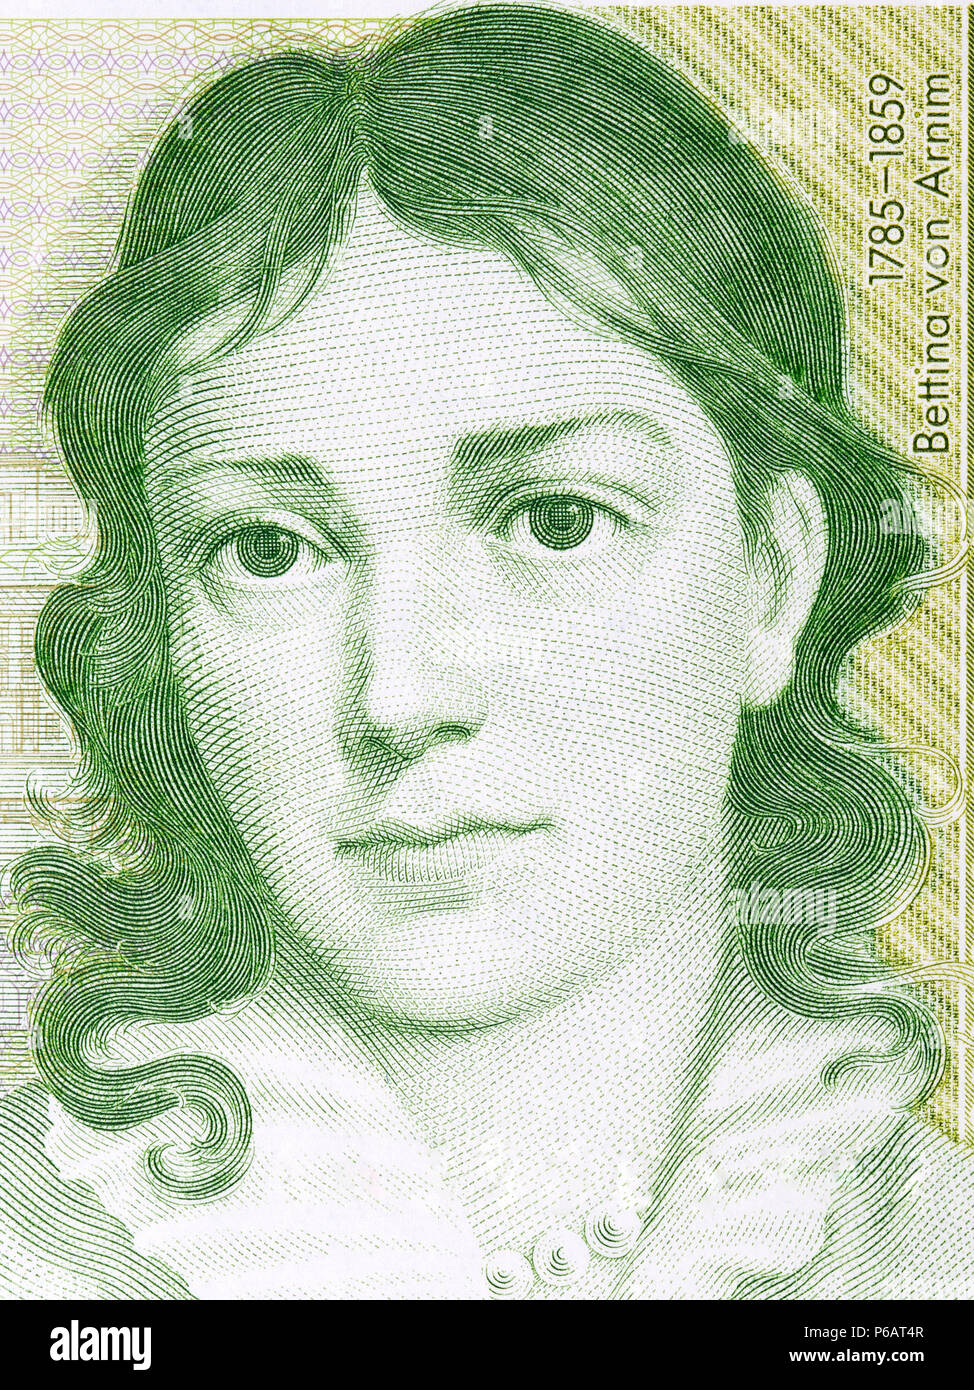 Bettina von Arnim portrait from Deutsche Mark Stock Photo